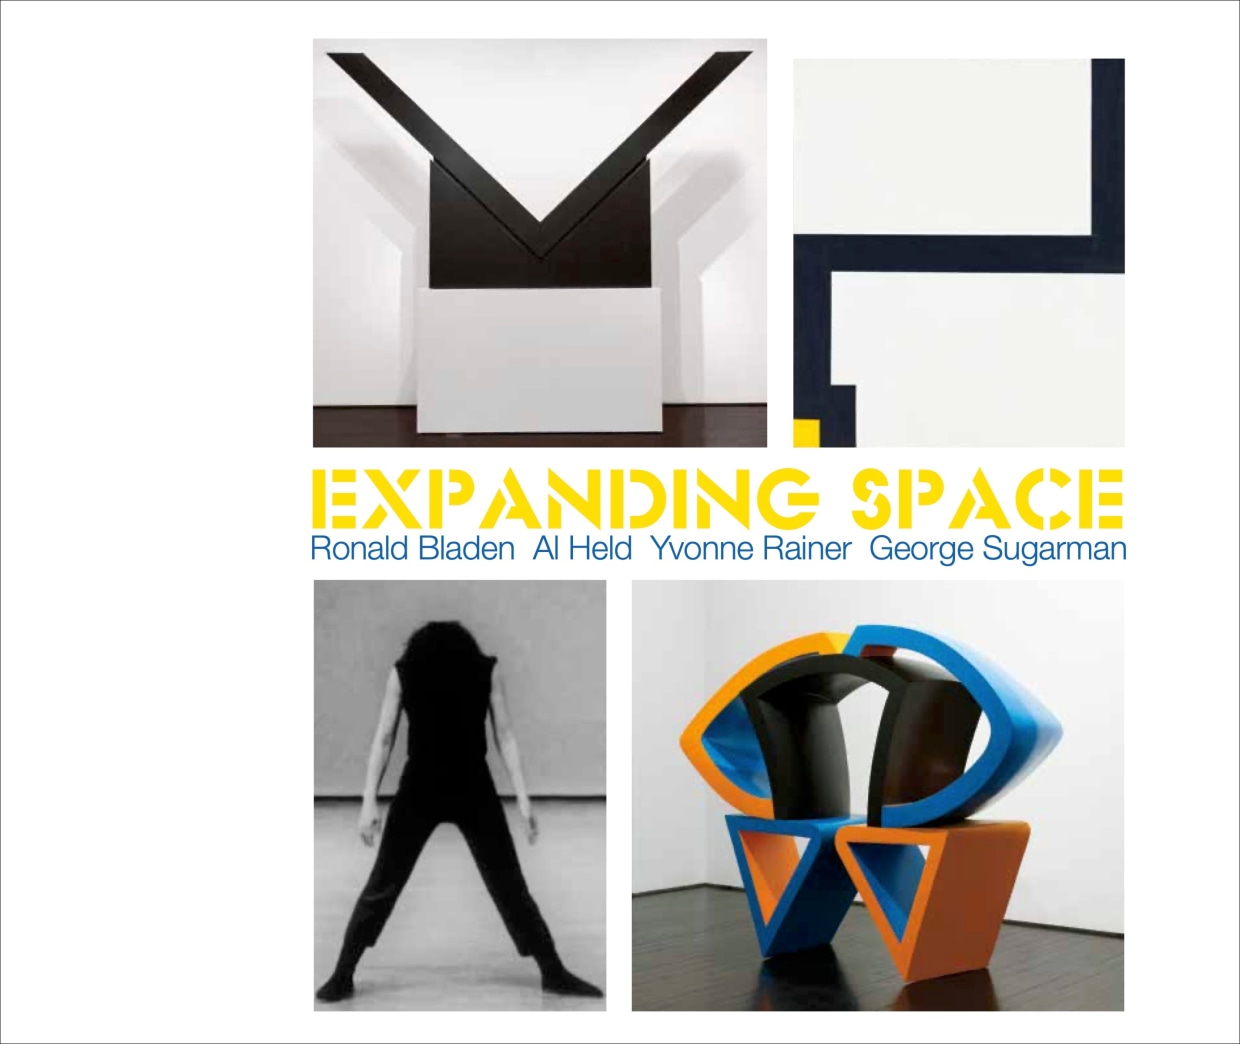 Expanding Space: Ronald Bladen, Al Held, Yvonne Rainer, George Sugarman